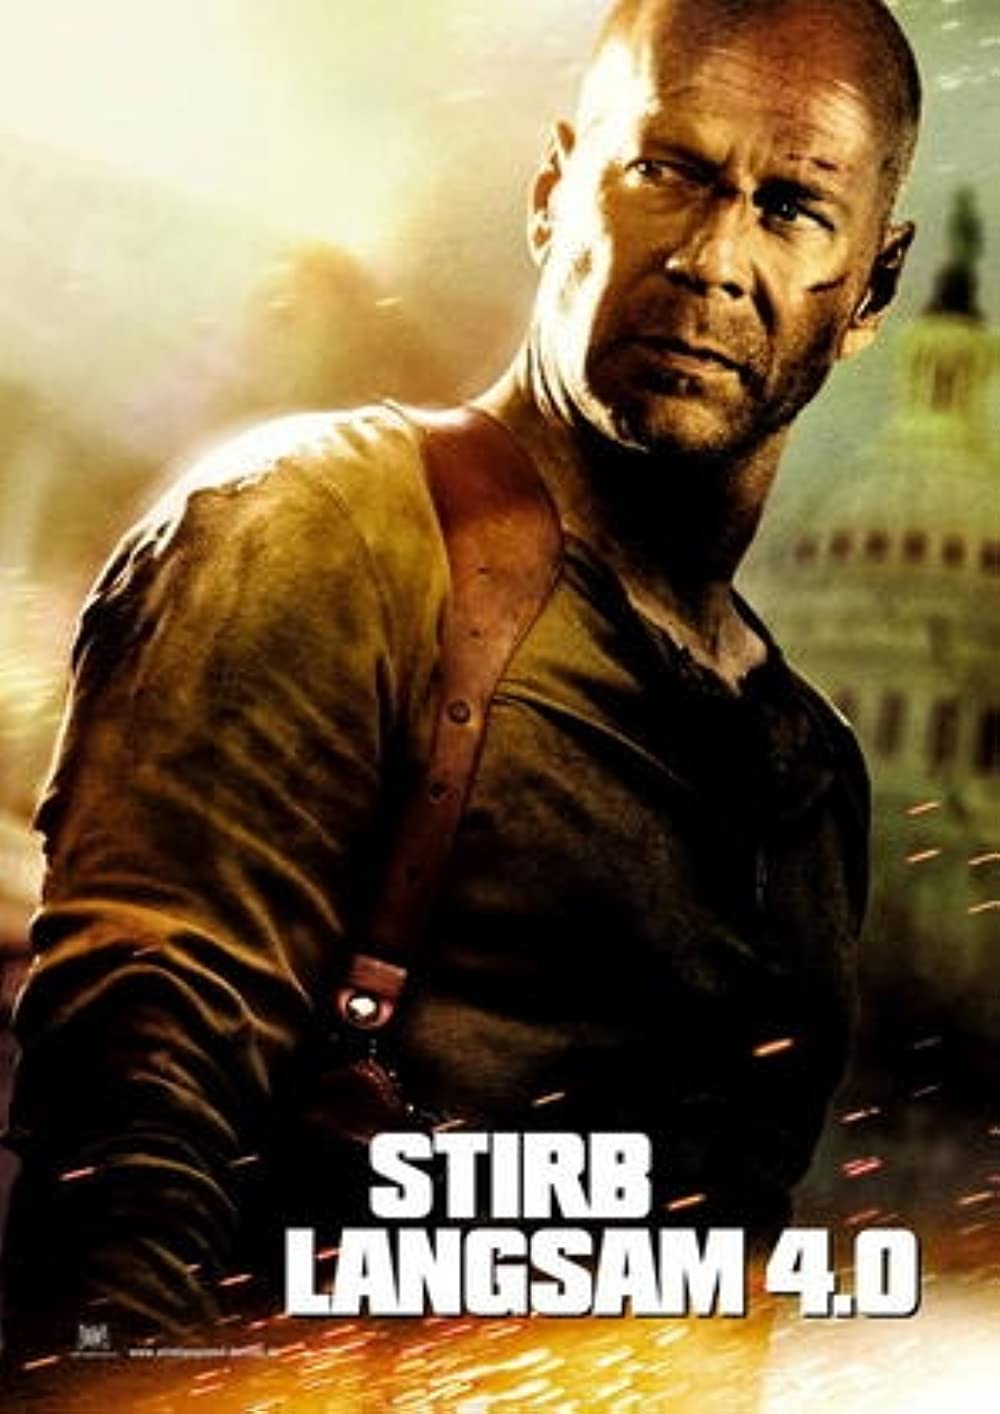 Filmbeschreibung zu Stirb Langsam 4.0 - Die Hard 4.0